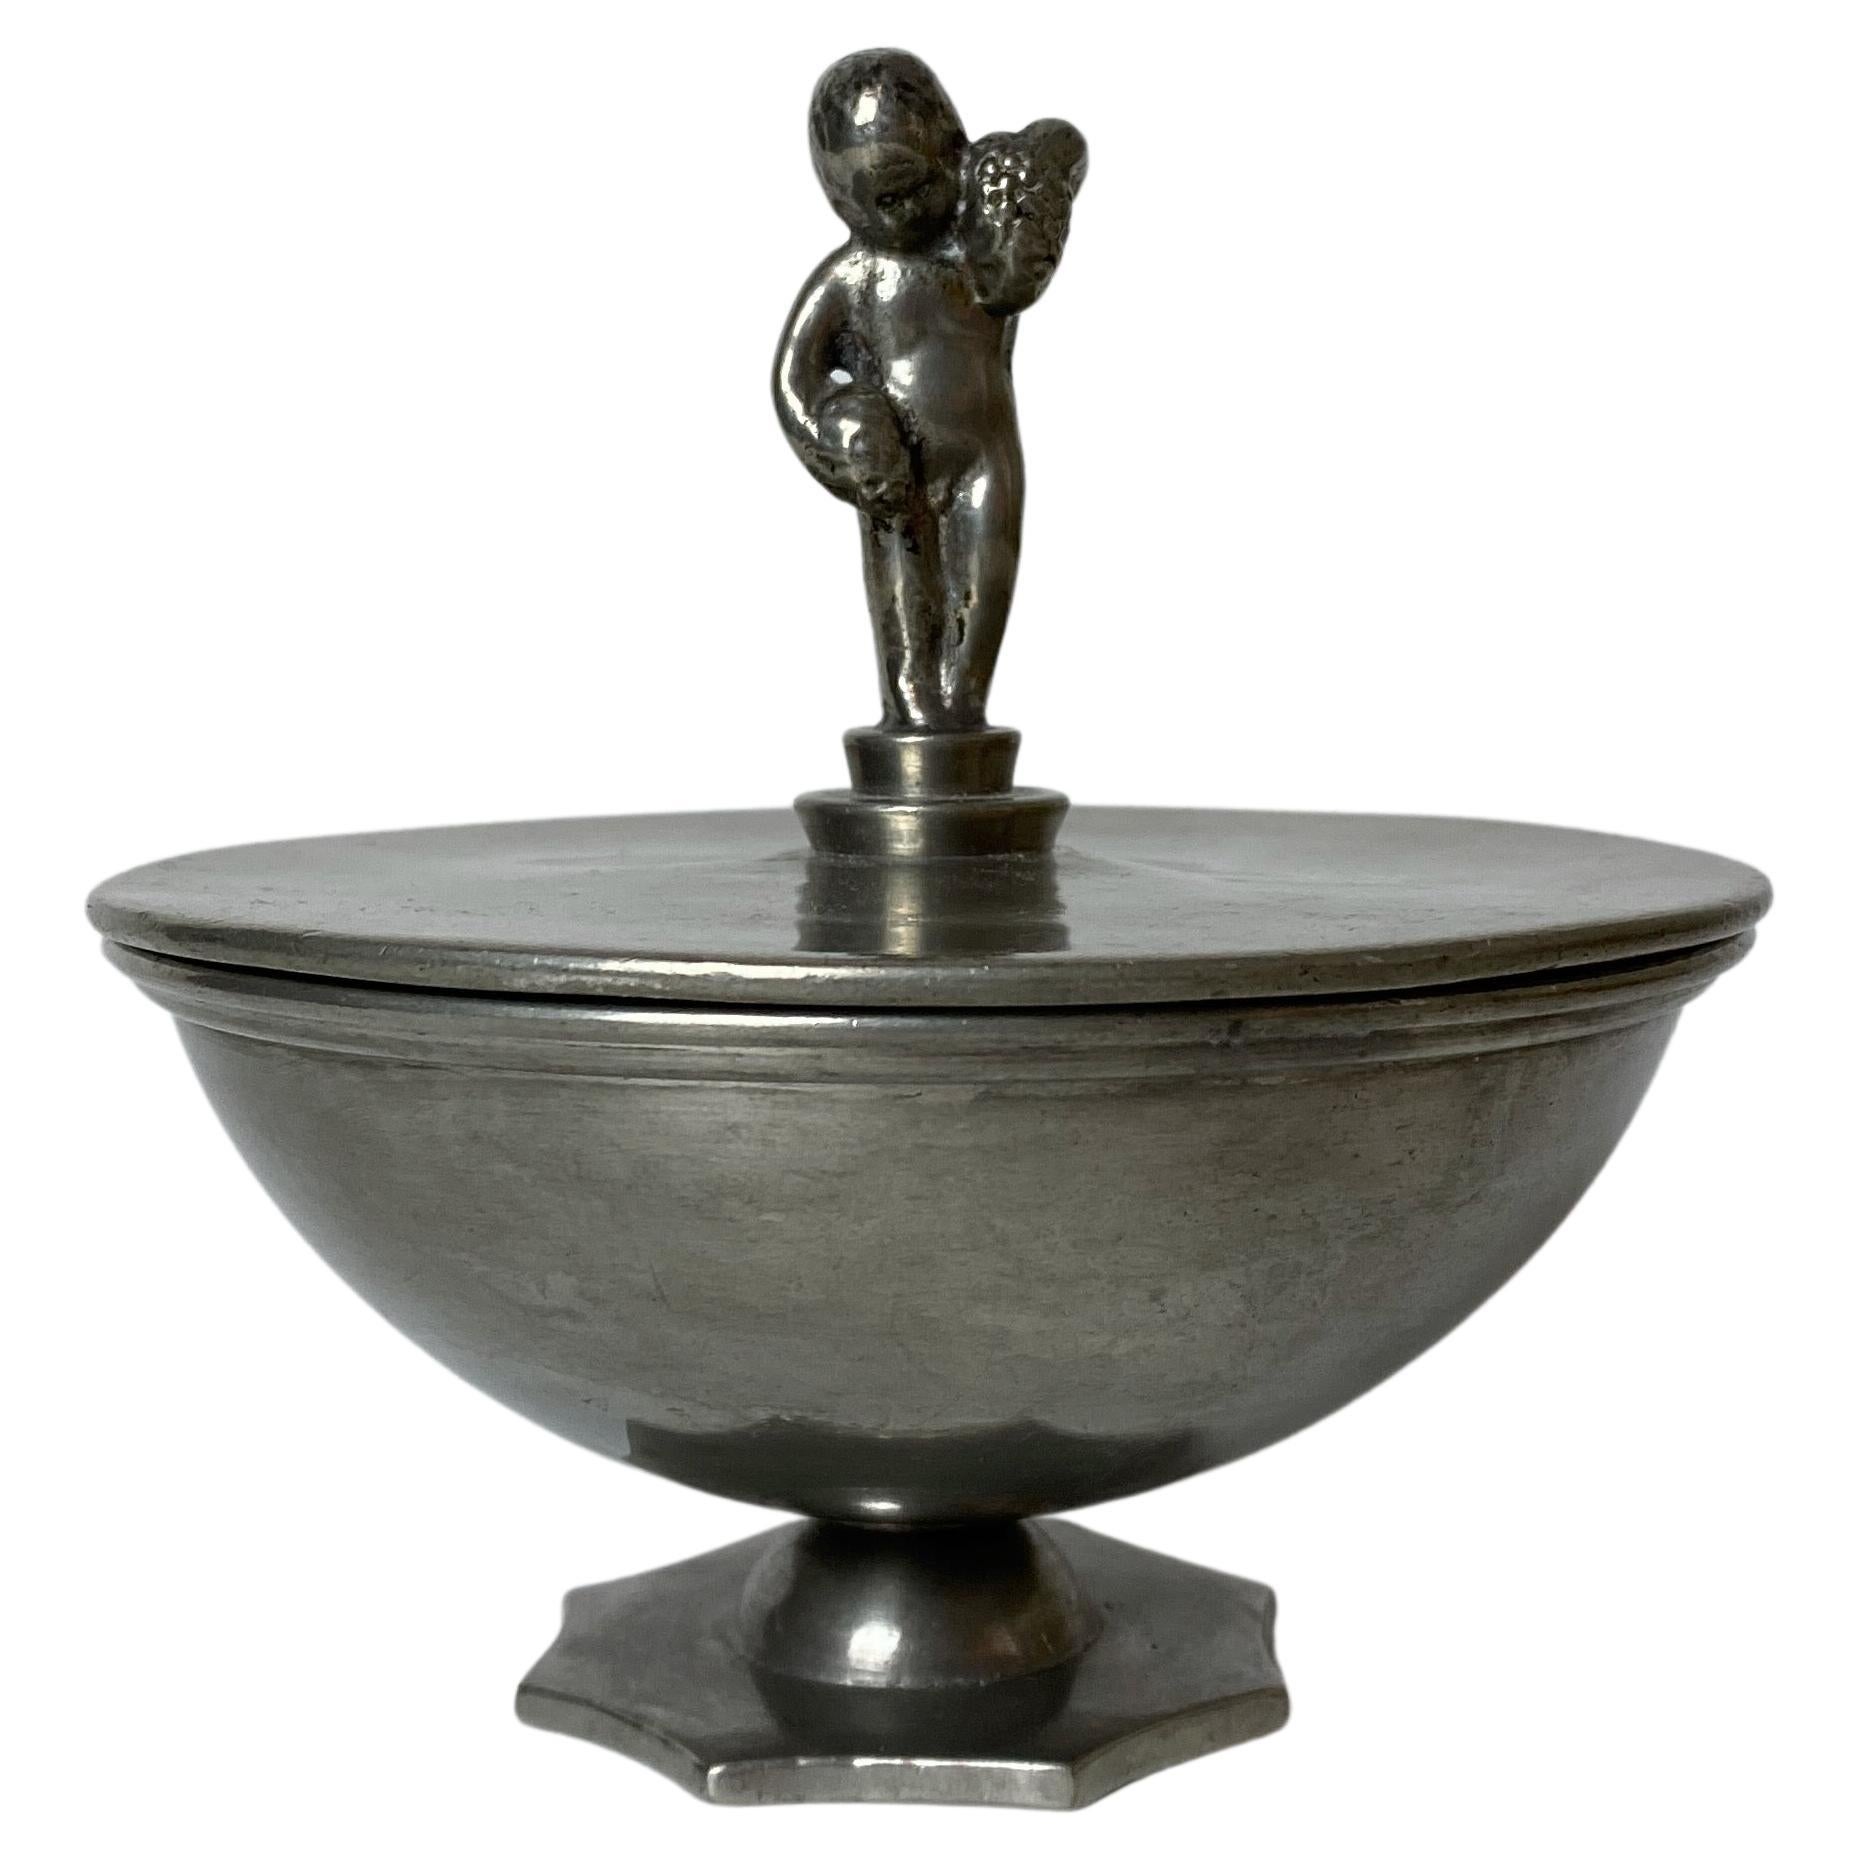 1931 Pewter Bowl by GAB Svenskt Tenn